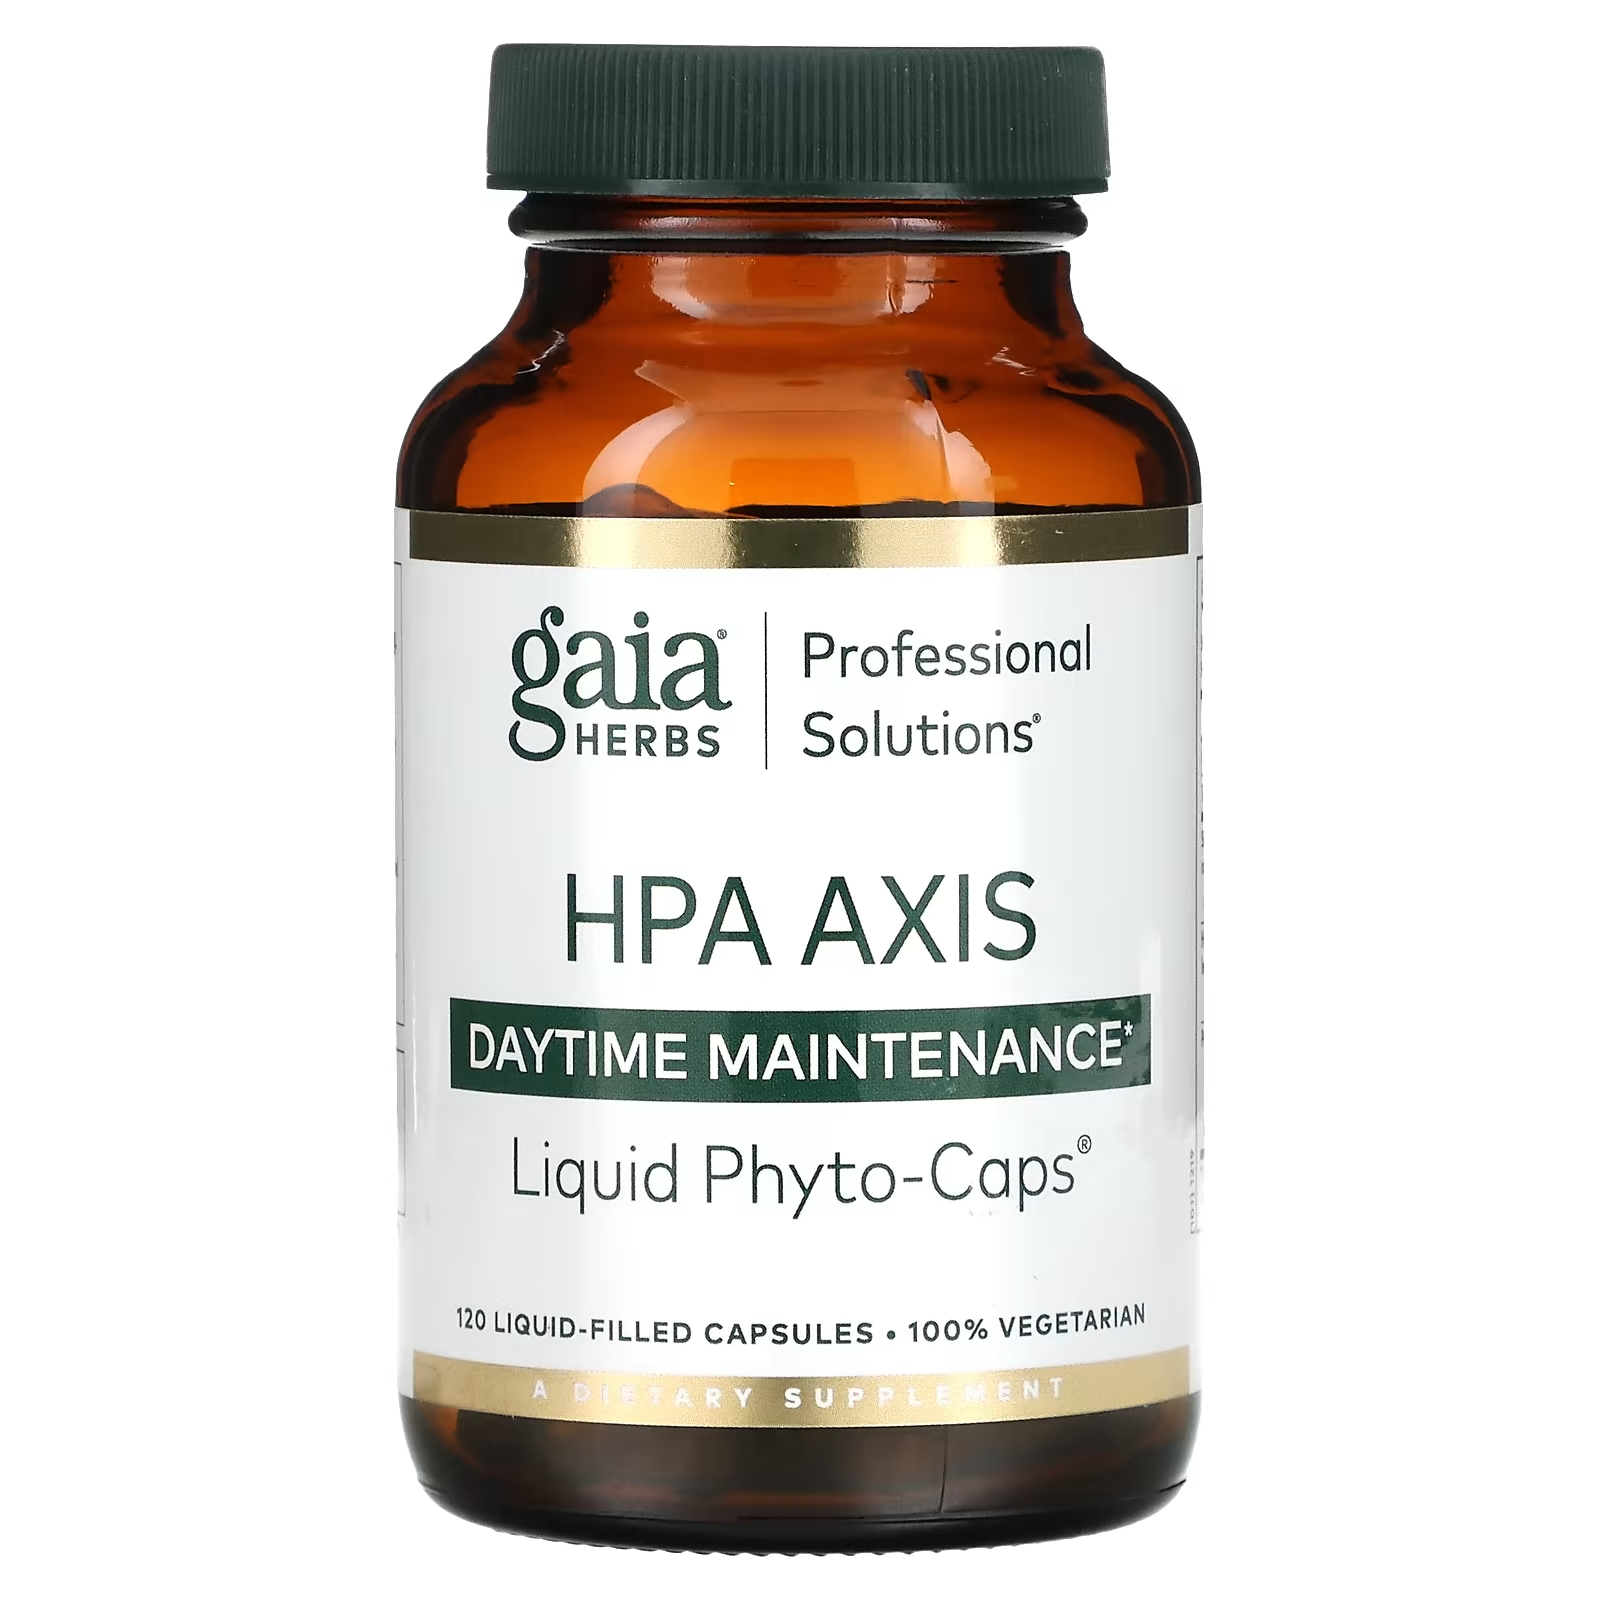 Gaia Herbs Professional Solutions Средство для борьбы со стрессом из серии HPA Axis для равновесия каждый день, 120 капсул gaia herbs professional solutions средство для борьбы со стрессом из серии hpa axis для равновесия каждый день 120 капсул заполненных жидкостью